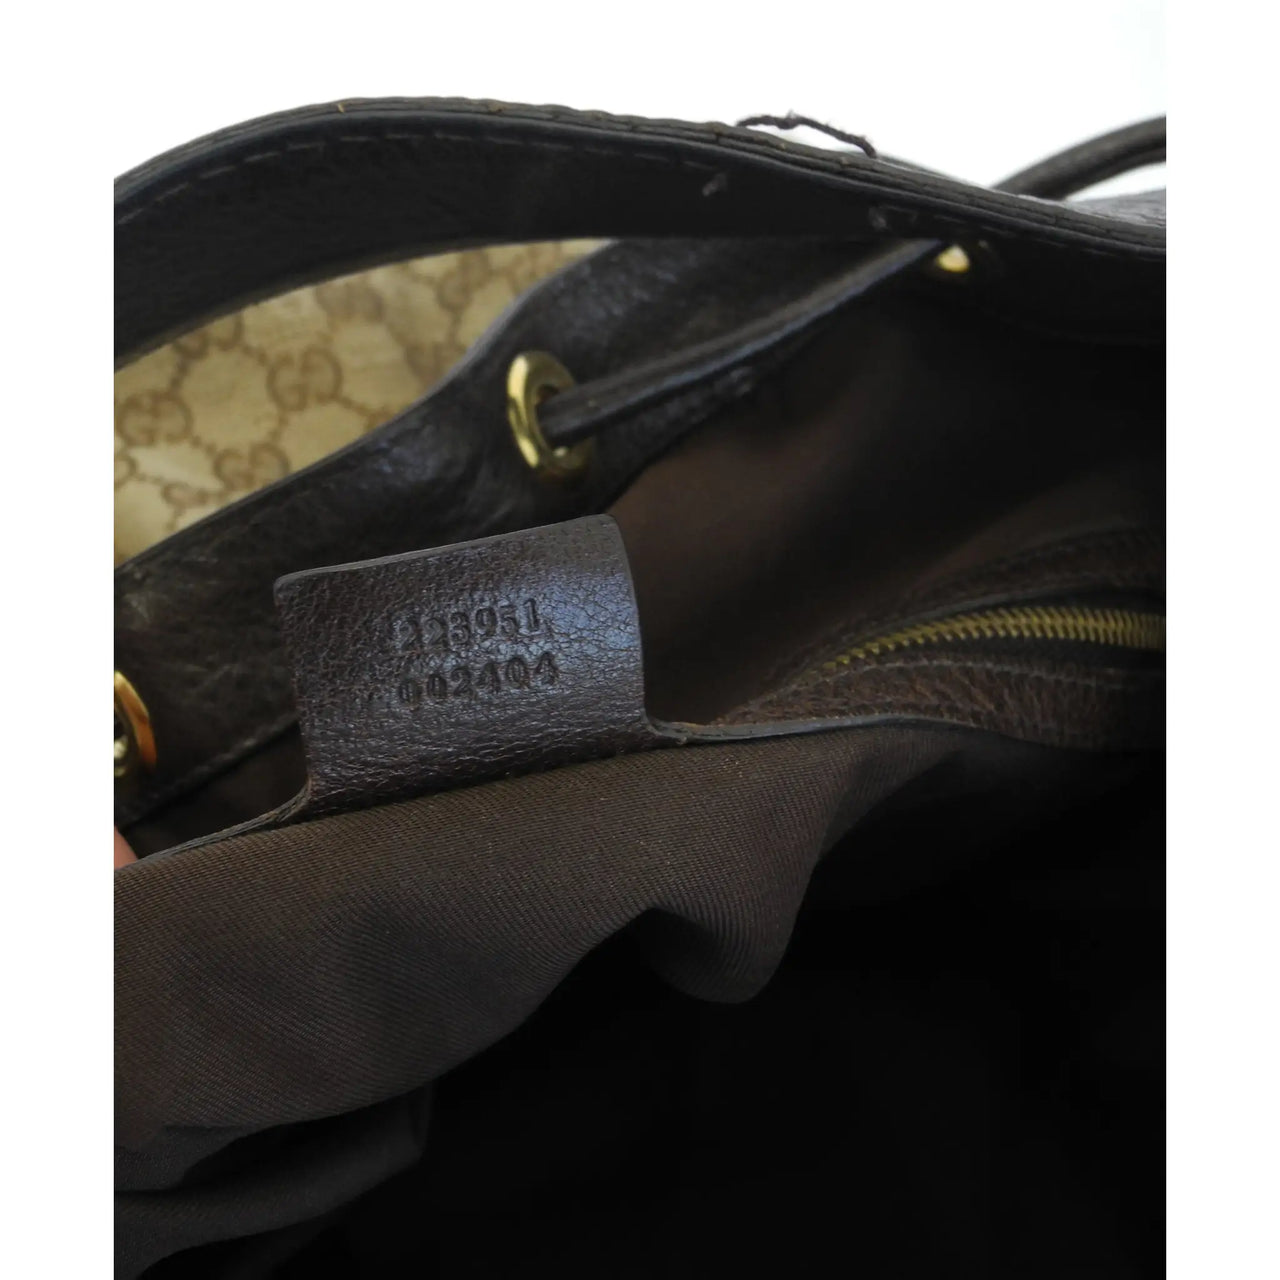 Champs Gala Collection Leather Hobo Bag